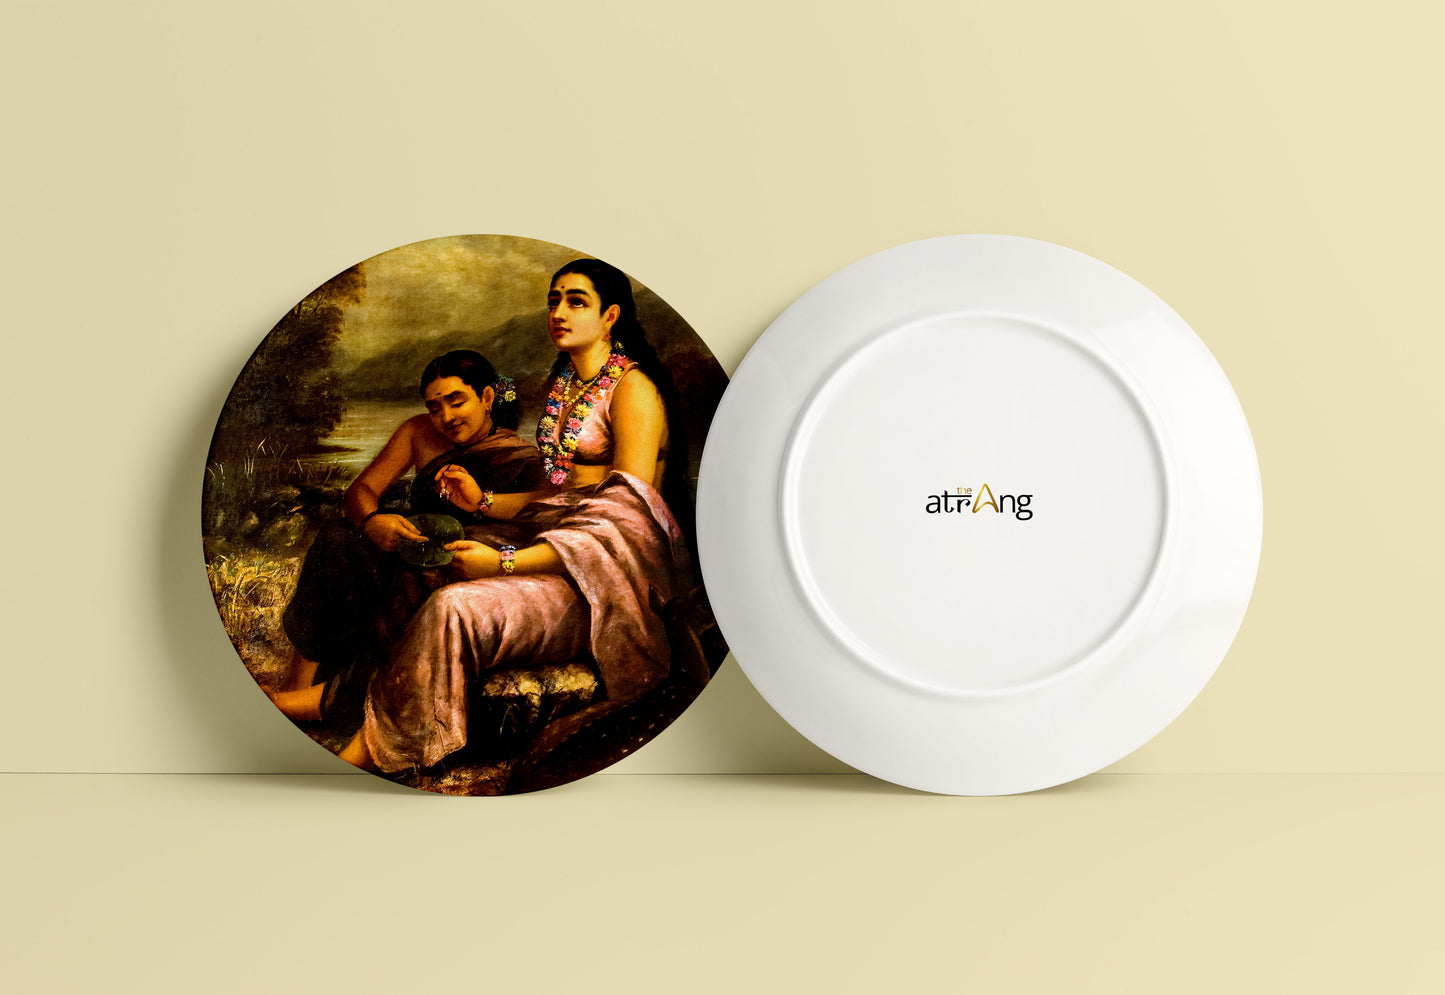 Shakuntala's love letter to King Dushyanta by Ravi Varma Ceramic Plate for Home Decor